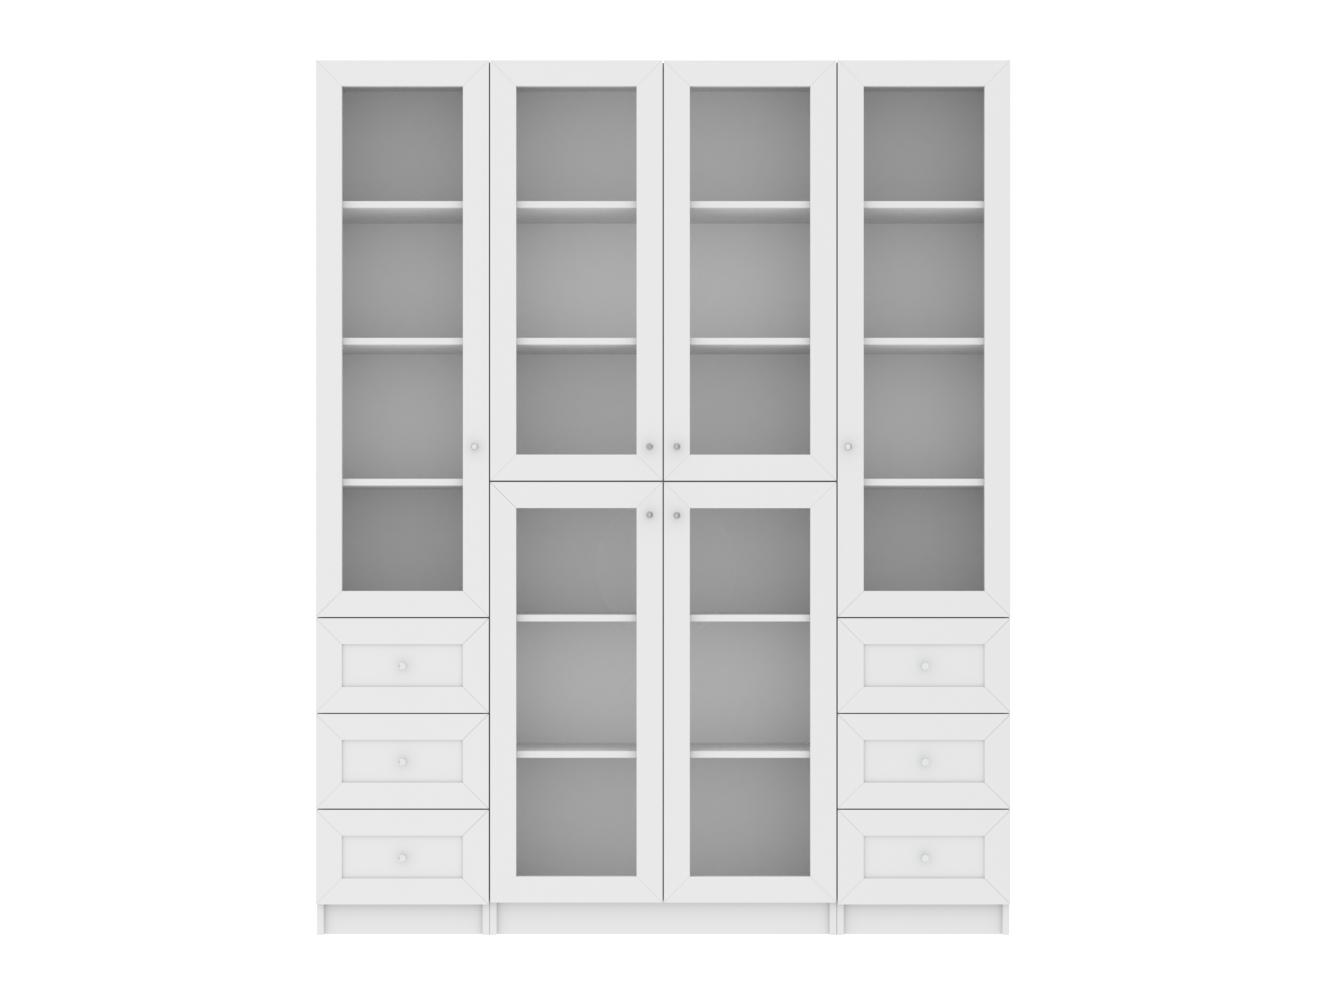 Изображение товара Книжный шкаф Билли 362 white ИКЕА (IKEA), 160x30x202 см на сайте adeta.ru